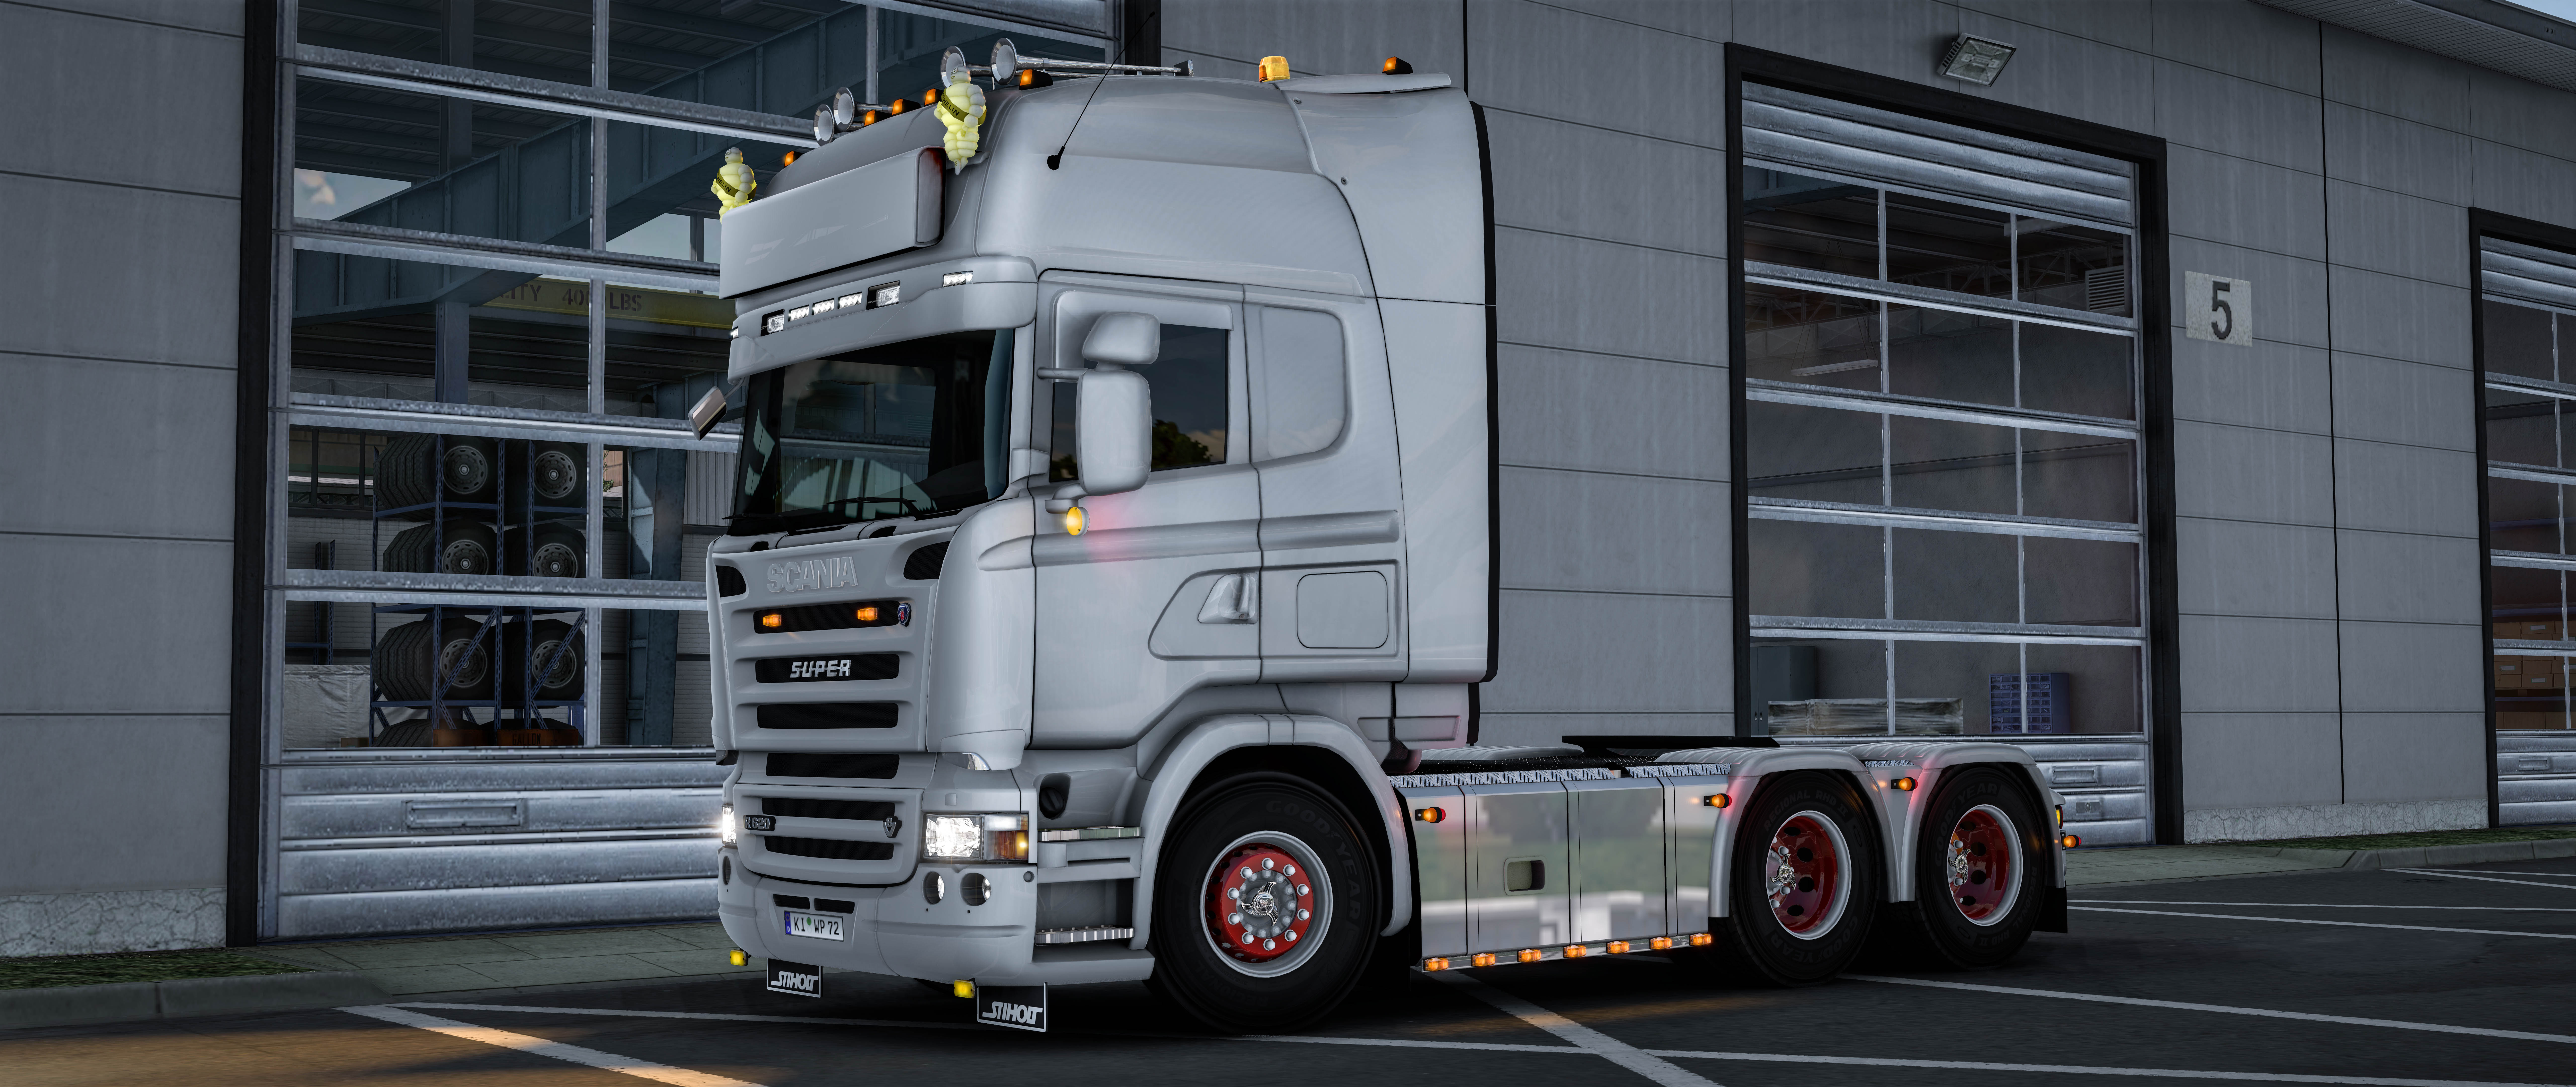 Jetta00 Addon Fixed 1 38 Ets2 Mods Euro Truck Simulator 2 Mods Ets2mods Lt